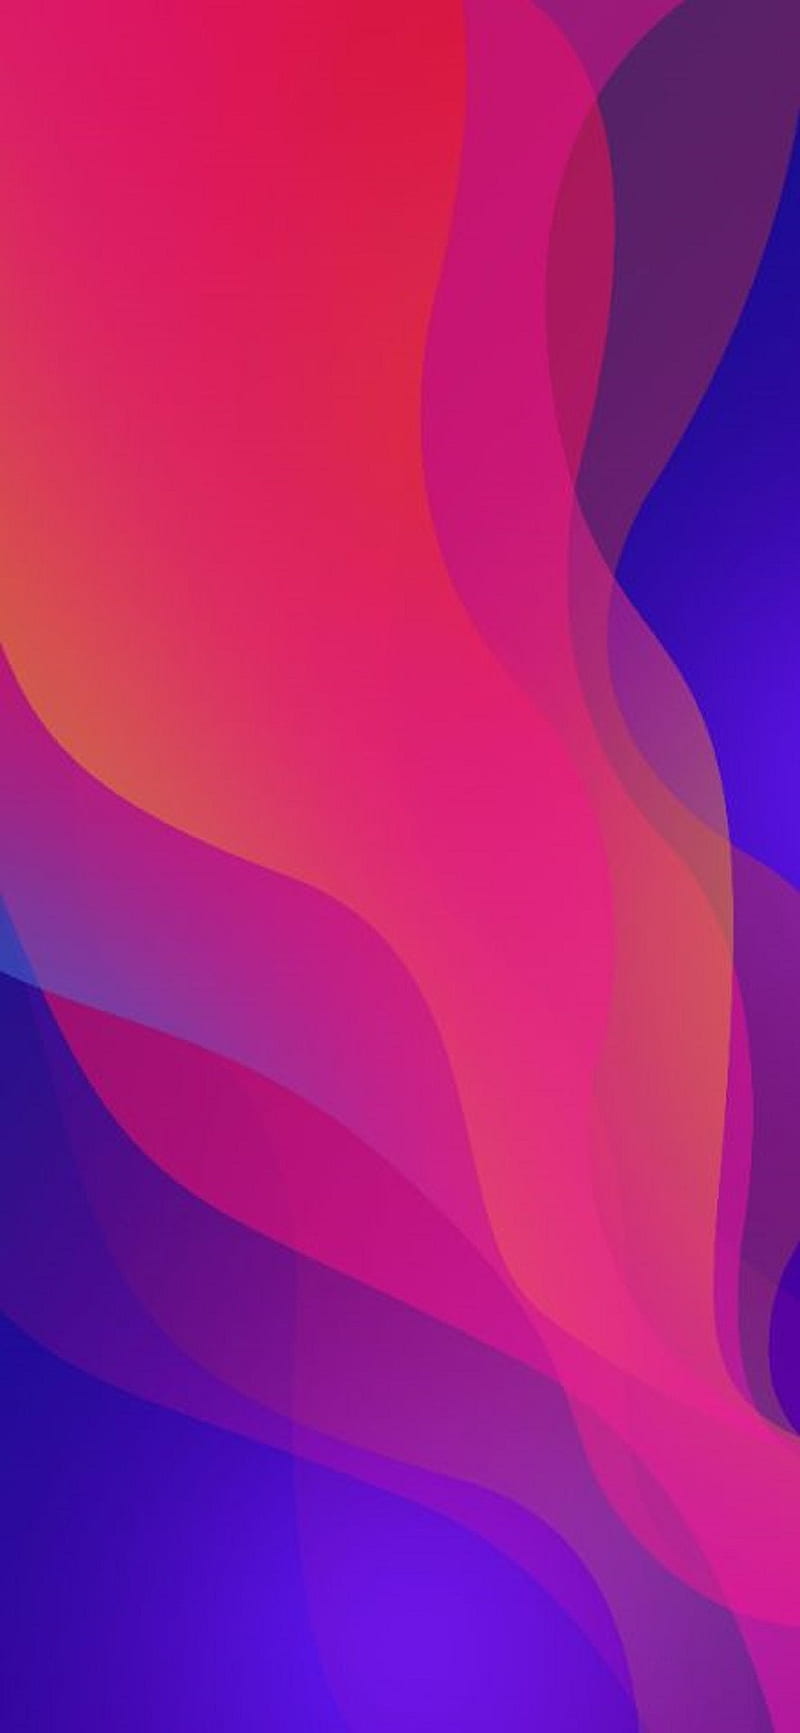 Oppo Find X là một trong những điện thoại được trang bị những màu sắc đẹp và thu hút nhất. Bạn sẽ không còn phải lo lắng về việc tìm kiếm một chiếc điện thoại màu sắc đẹp khi đã có Oppo Find X. Hãy xem hình ảnh liên quan để khám phá những màu sắc của Oppo Find X nhé.